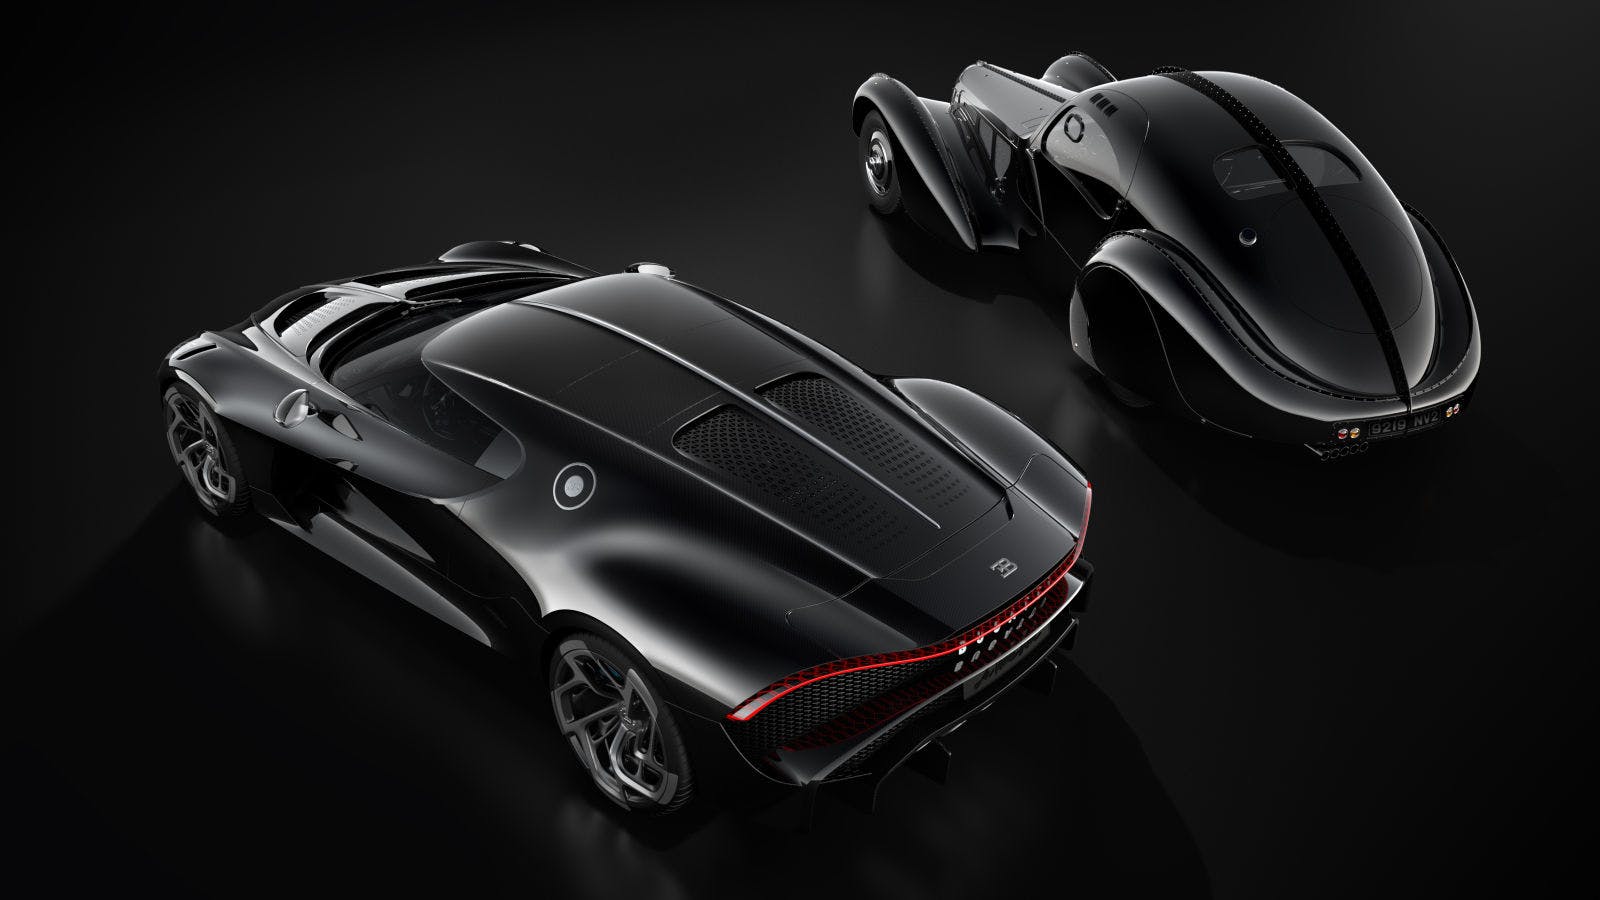 Zu Ehren des legendären Bugatti Type 57 SC Atlantic kreiert Bugatti den La Voiture Noire.